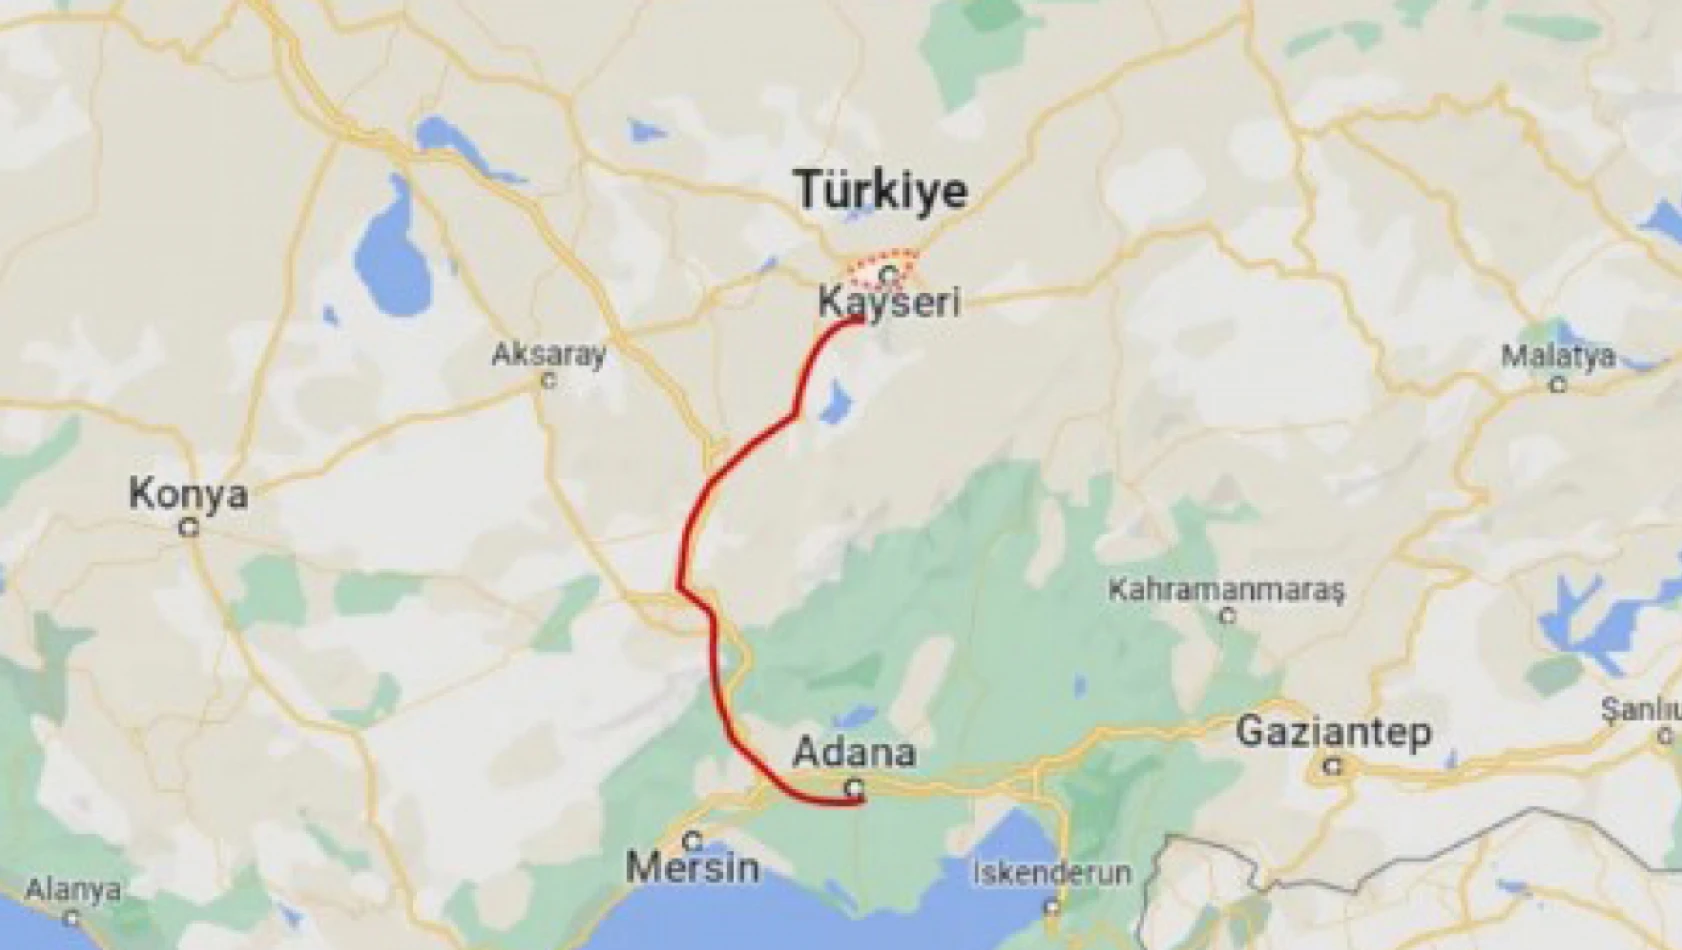 Kayseri'den Adana'ya Gidip Katliam Yapmışlar!